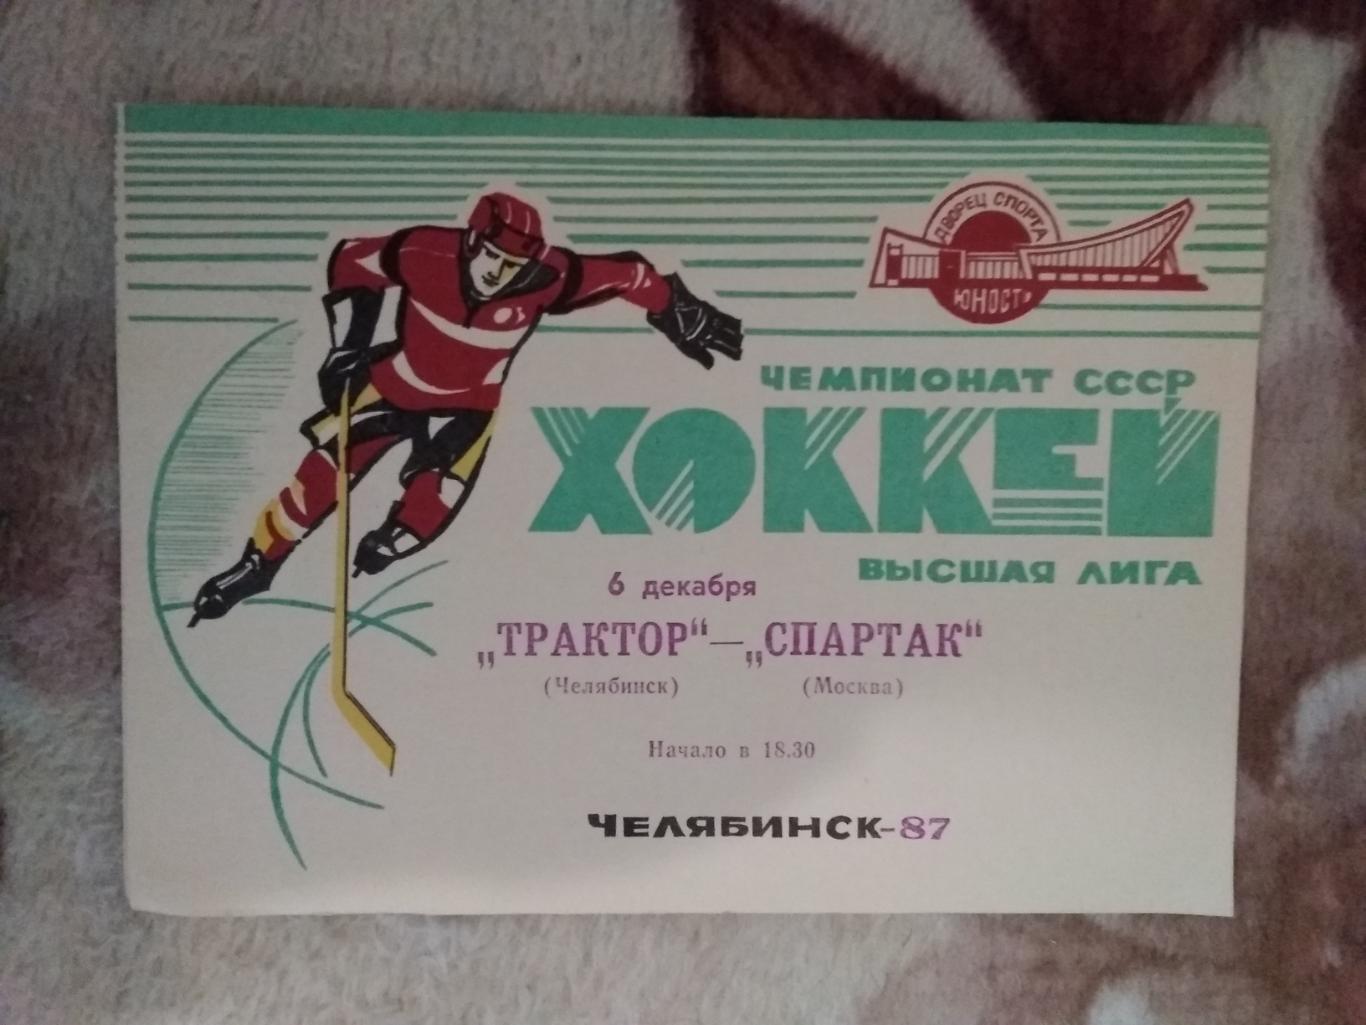 Трактор (Челябинск) - Спартак (Москва) 06.12.1987 г.